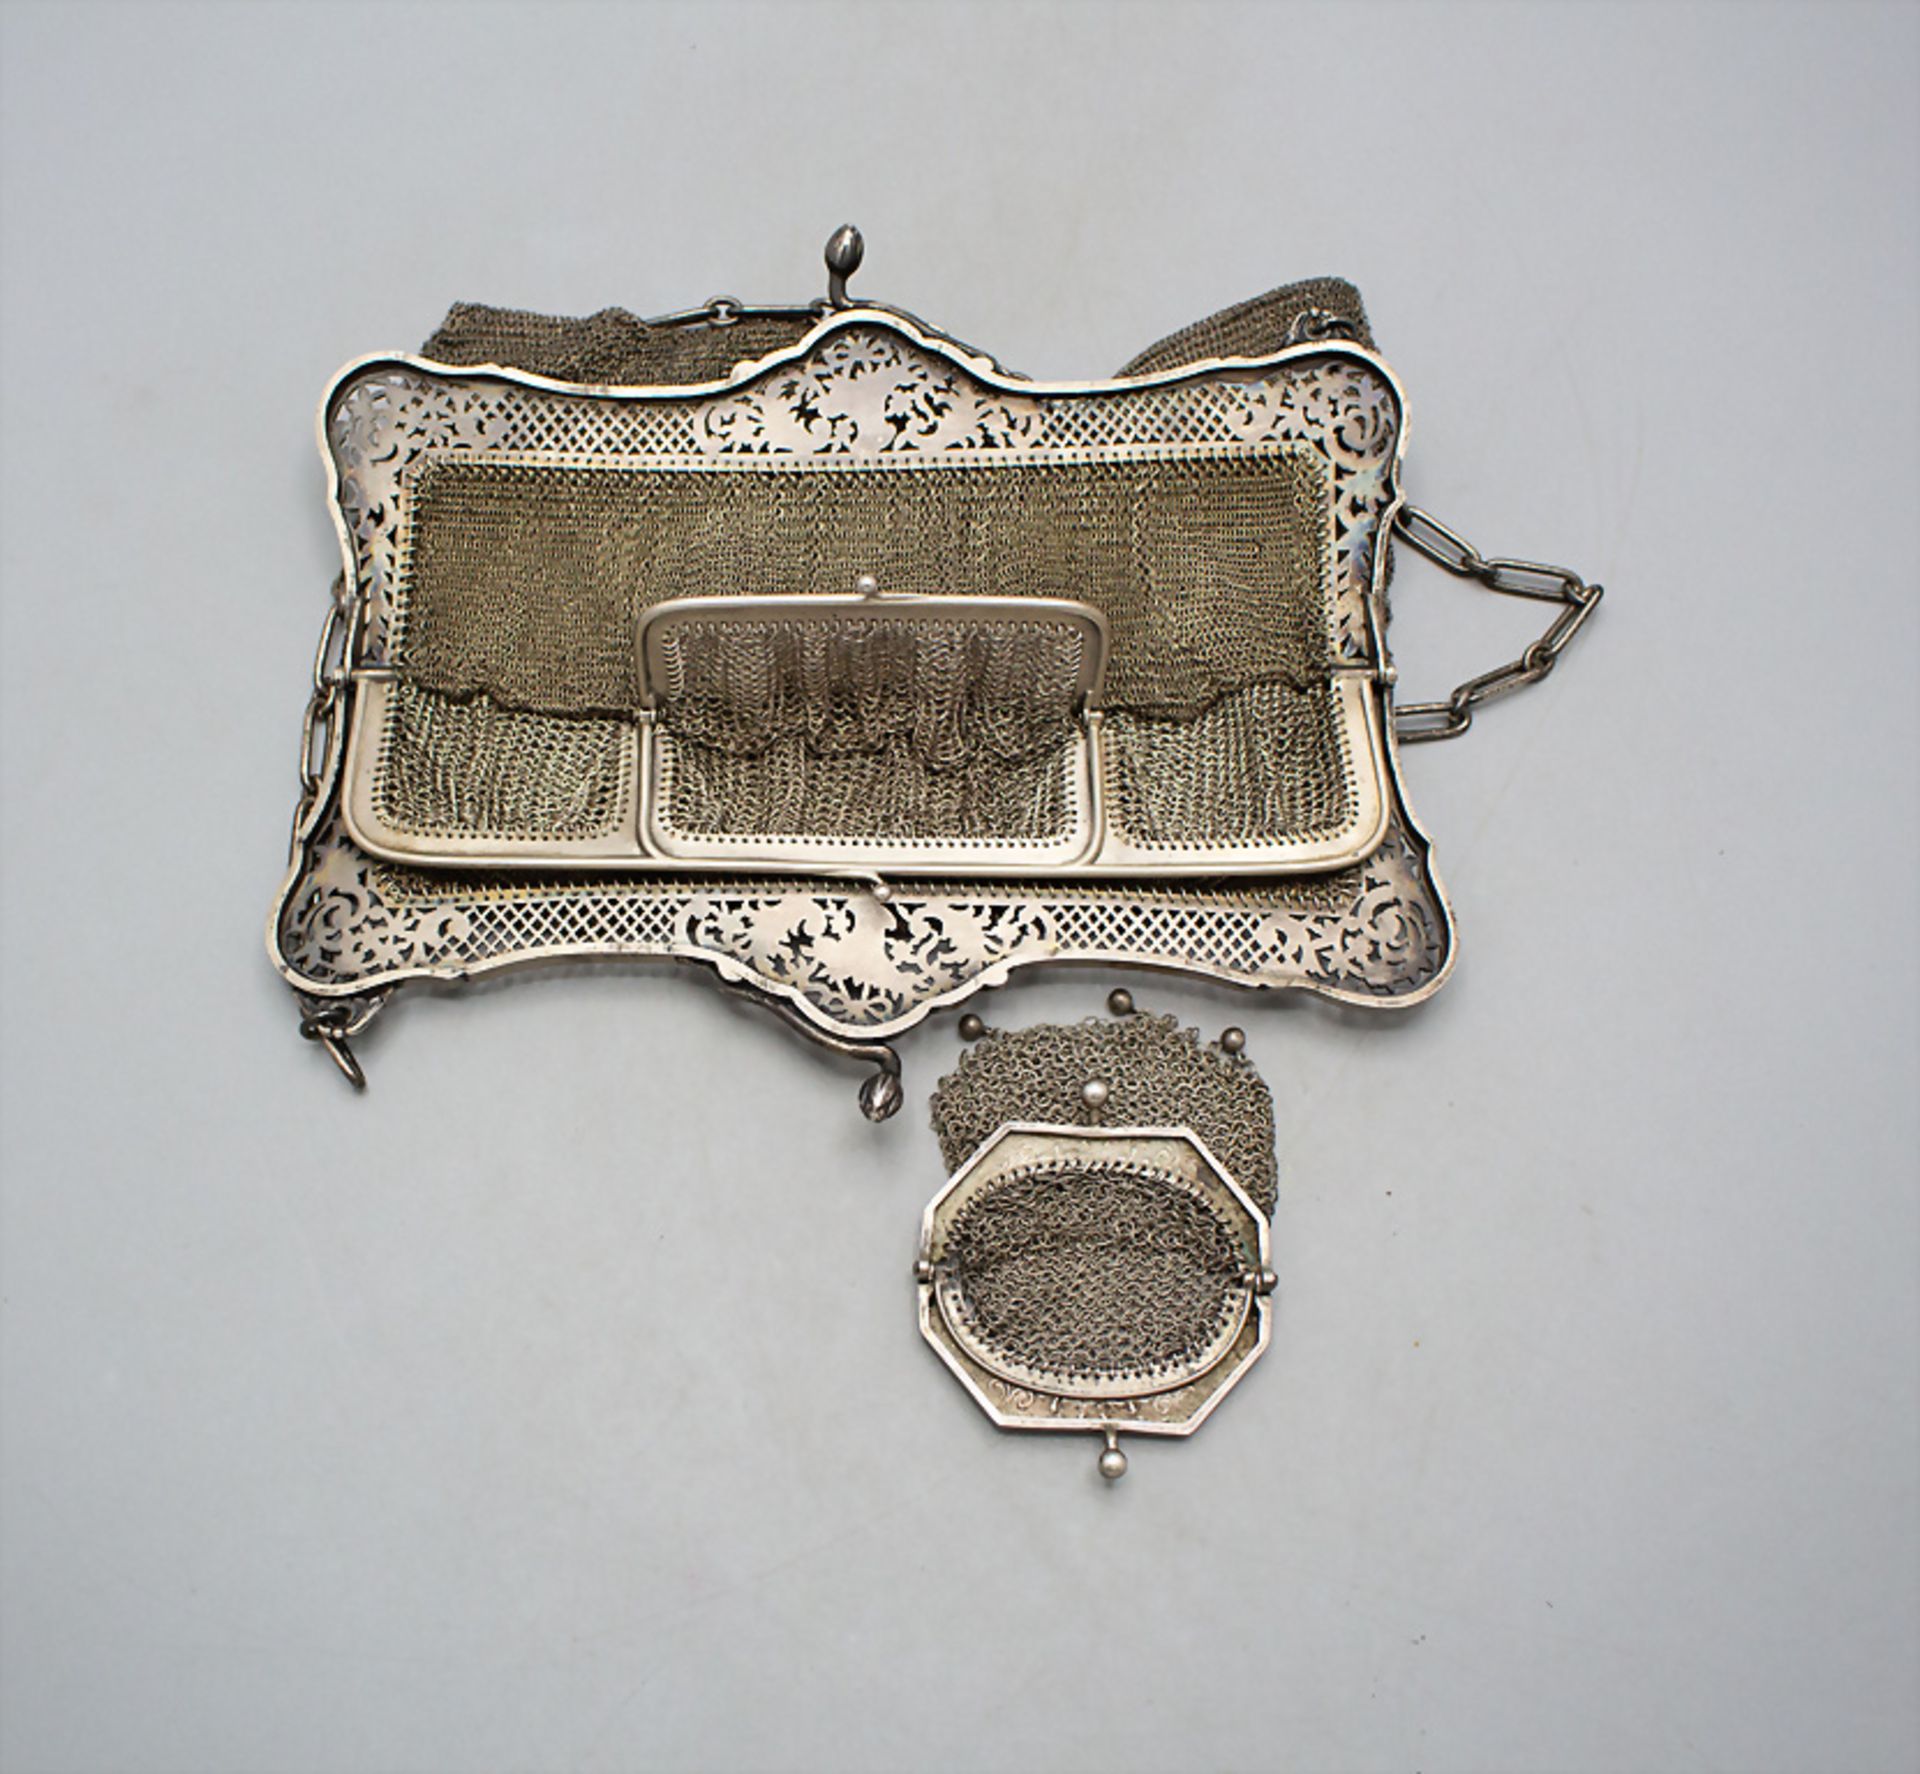 Silber Abendtasche mit Geldbörse / Kettentasche/ A silver evening bag with silver wallet, ... - Bild 3 aus 4